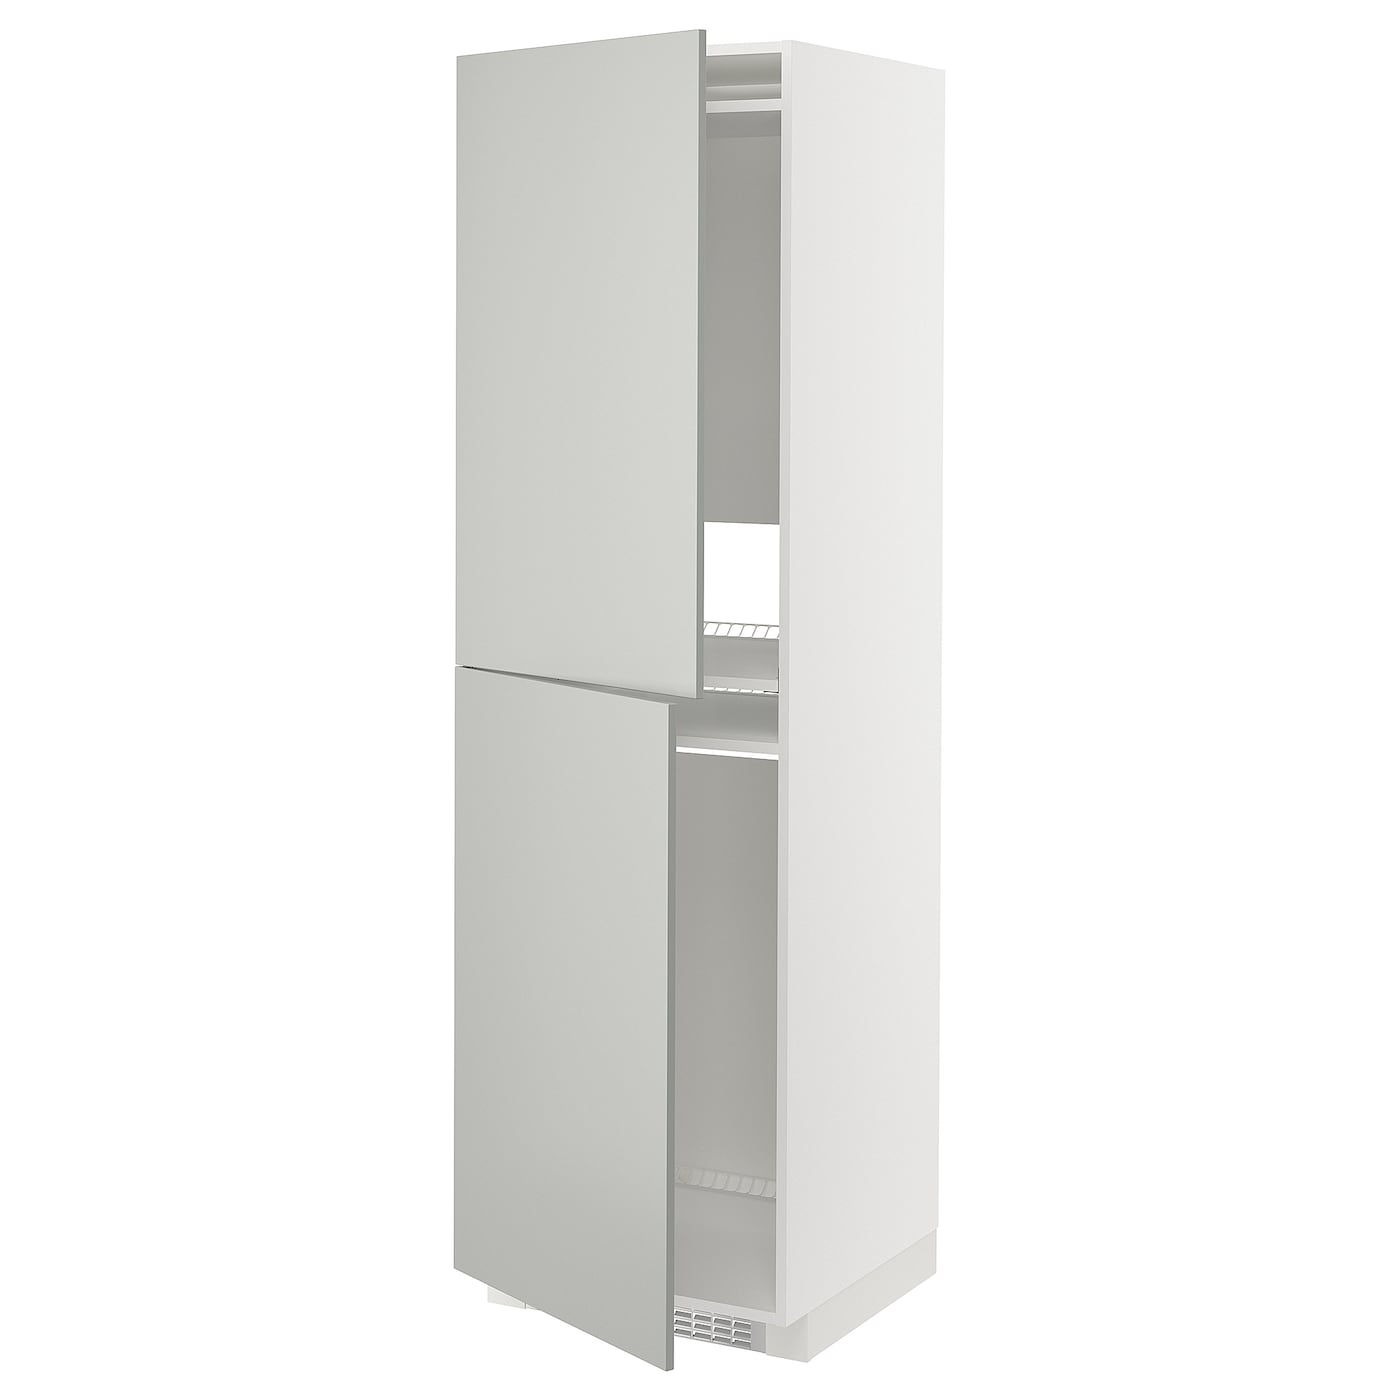 Шкаф - METOD IKEA/ МЕТОД ИКЕА,  208х60 см, белый/серый